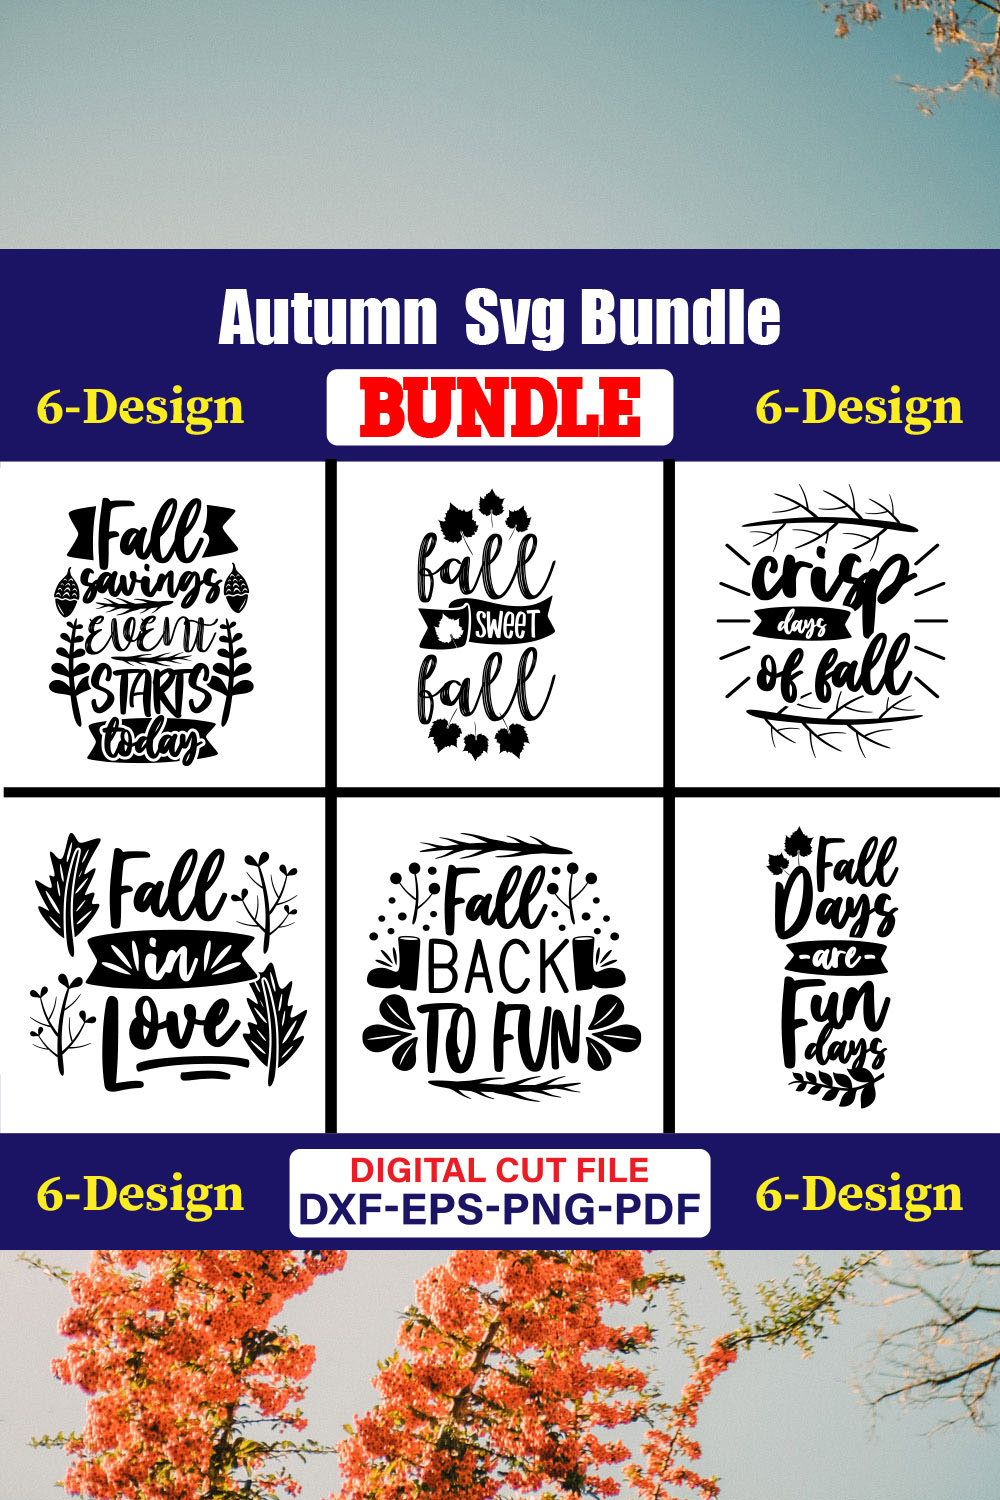 Autumn SVG T-shirt Design Bundle Vol-02 pinterest preview image.